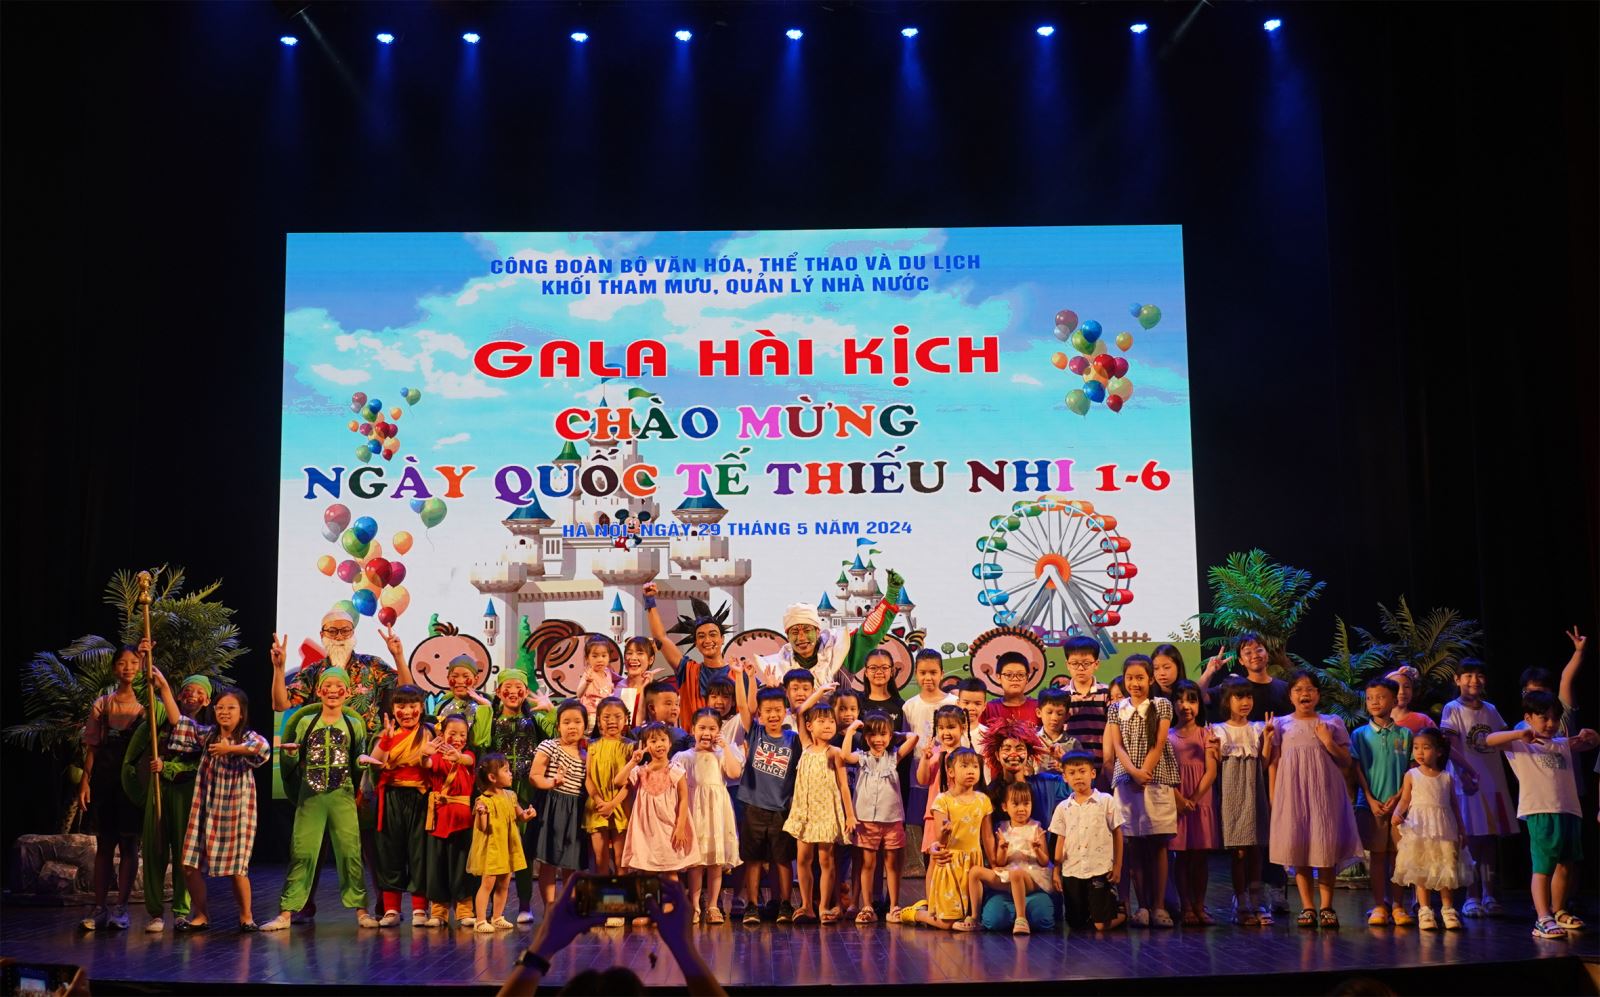 Gala Hài kịch đặc biệt dành tặng các cháu thiếu niên và nhi đồng nhân dịp kỷ niệm Ngày Quốc tế thiếu nhi 1-6